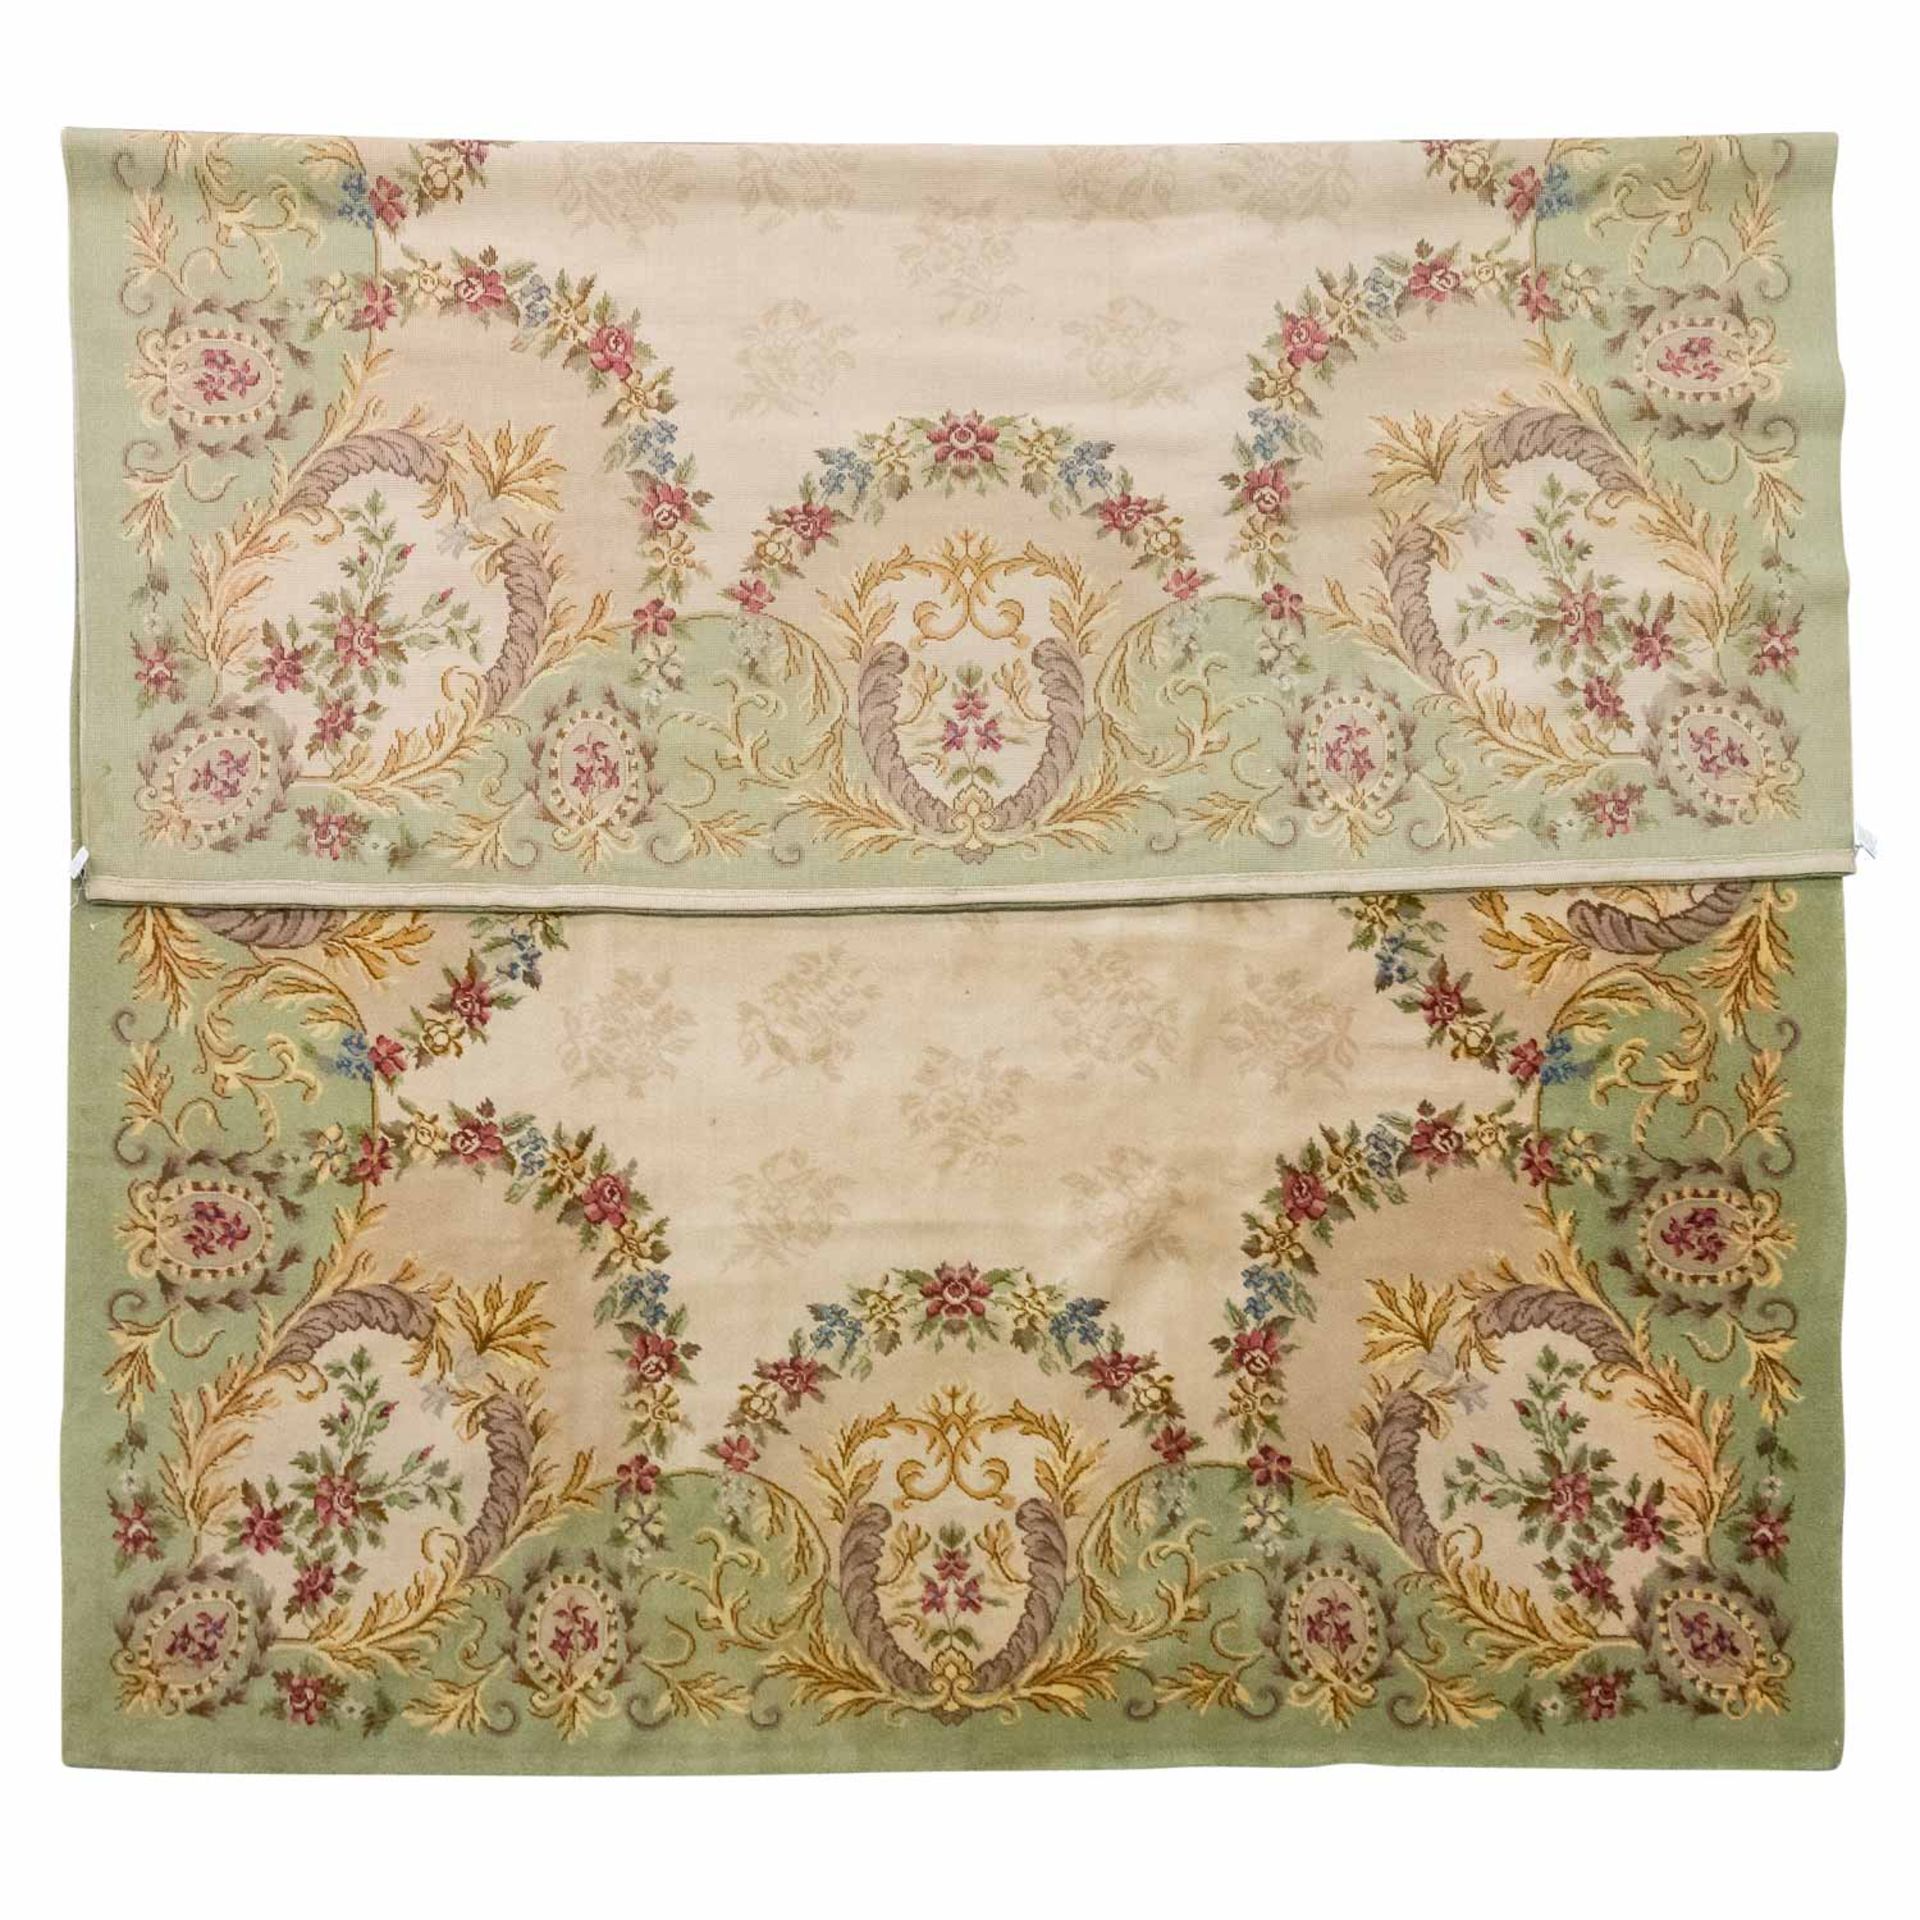 Dekorativer Teppich im französischen Aubusson-Stil, 20. Jh., 340x250 cm. - Bild 2 aus 3